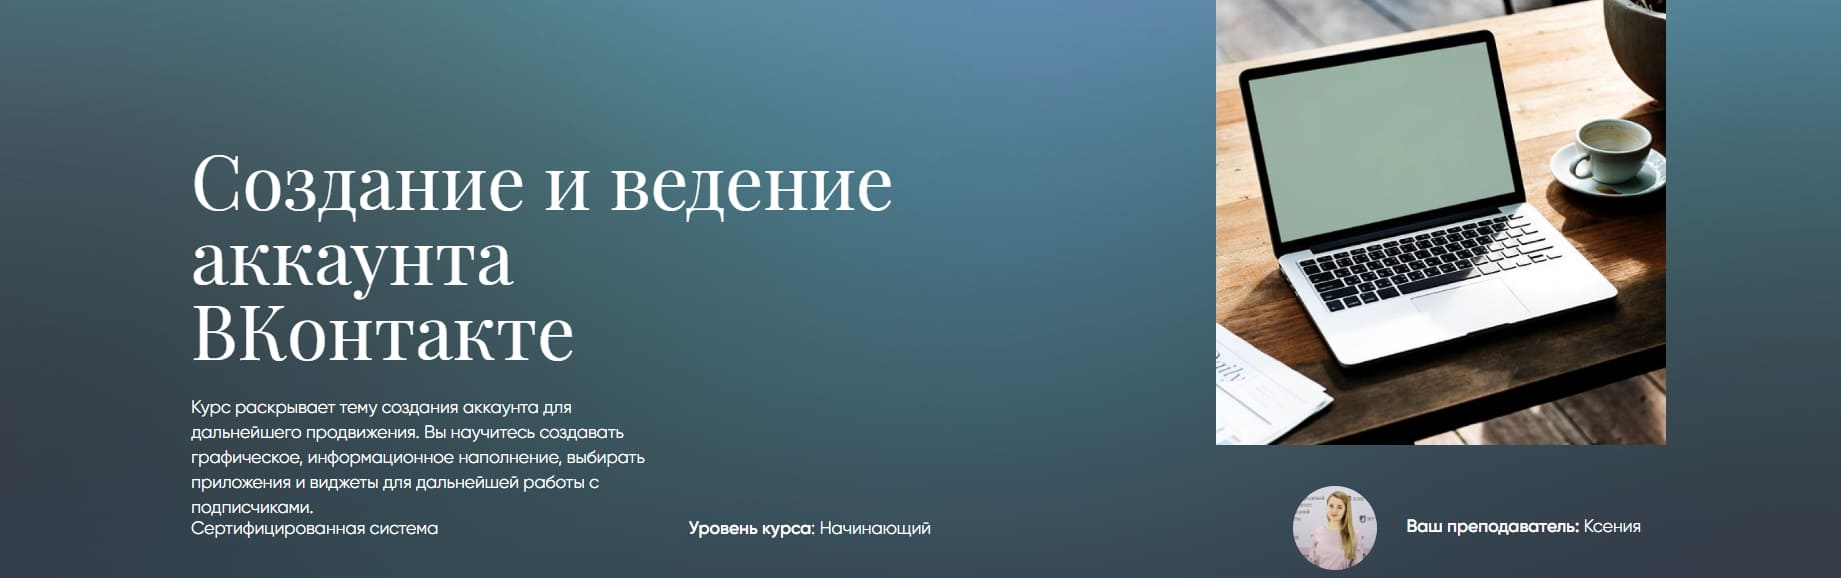 Скачать - Создание и ведение аккаунта ВКонтакте. Beauty платформа..jpg